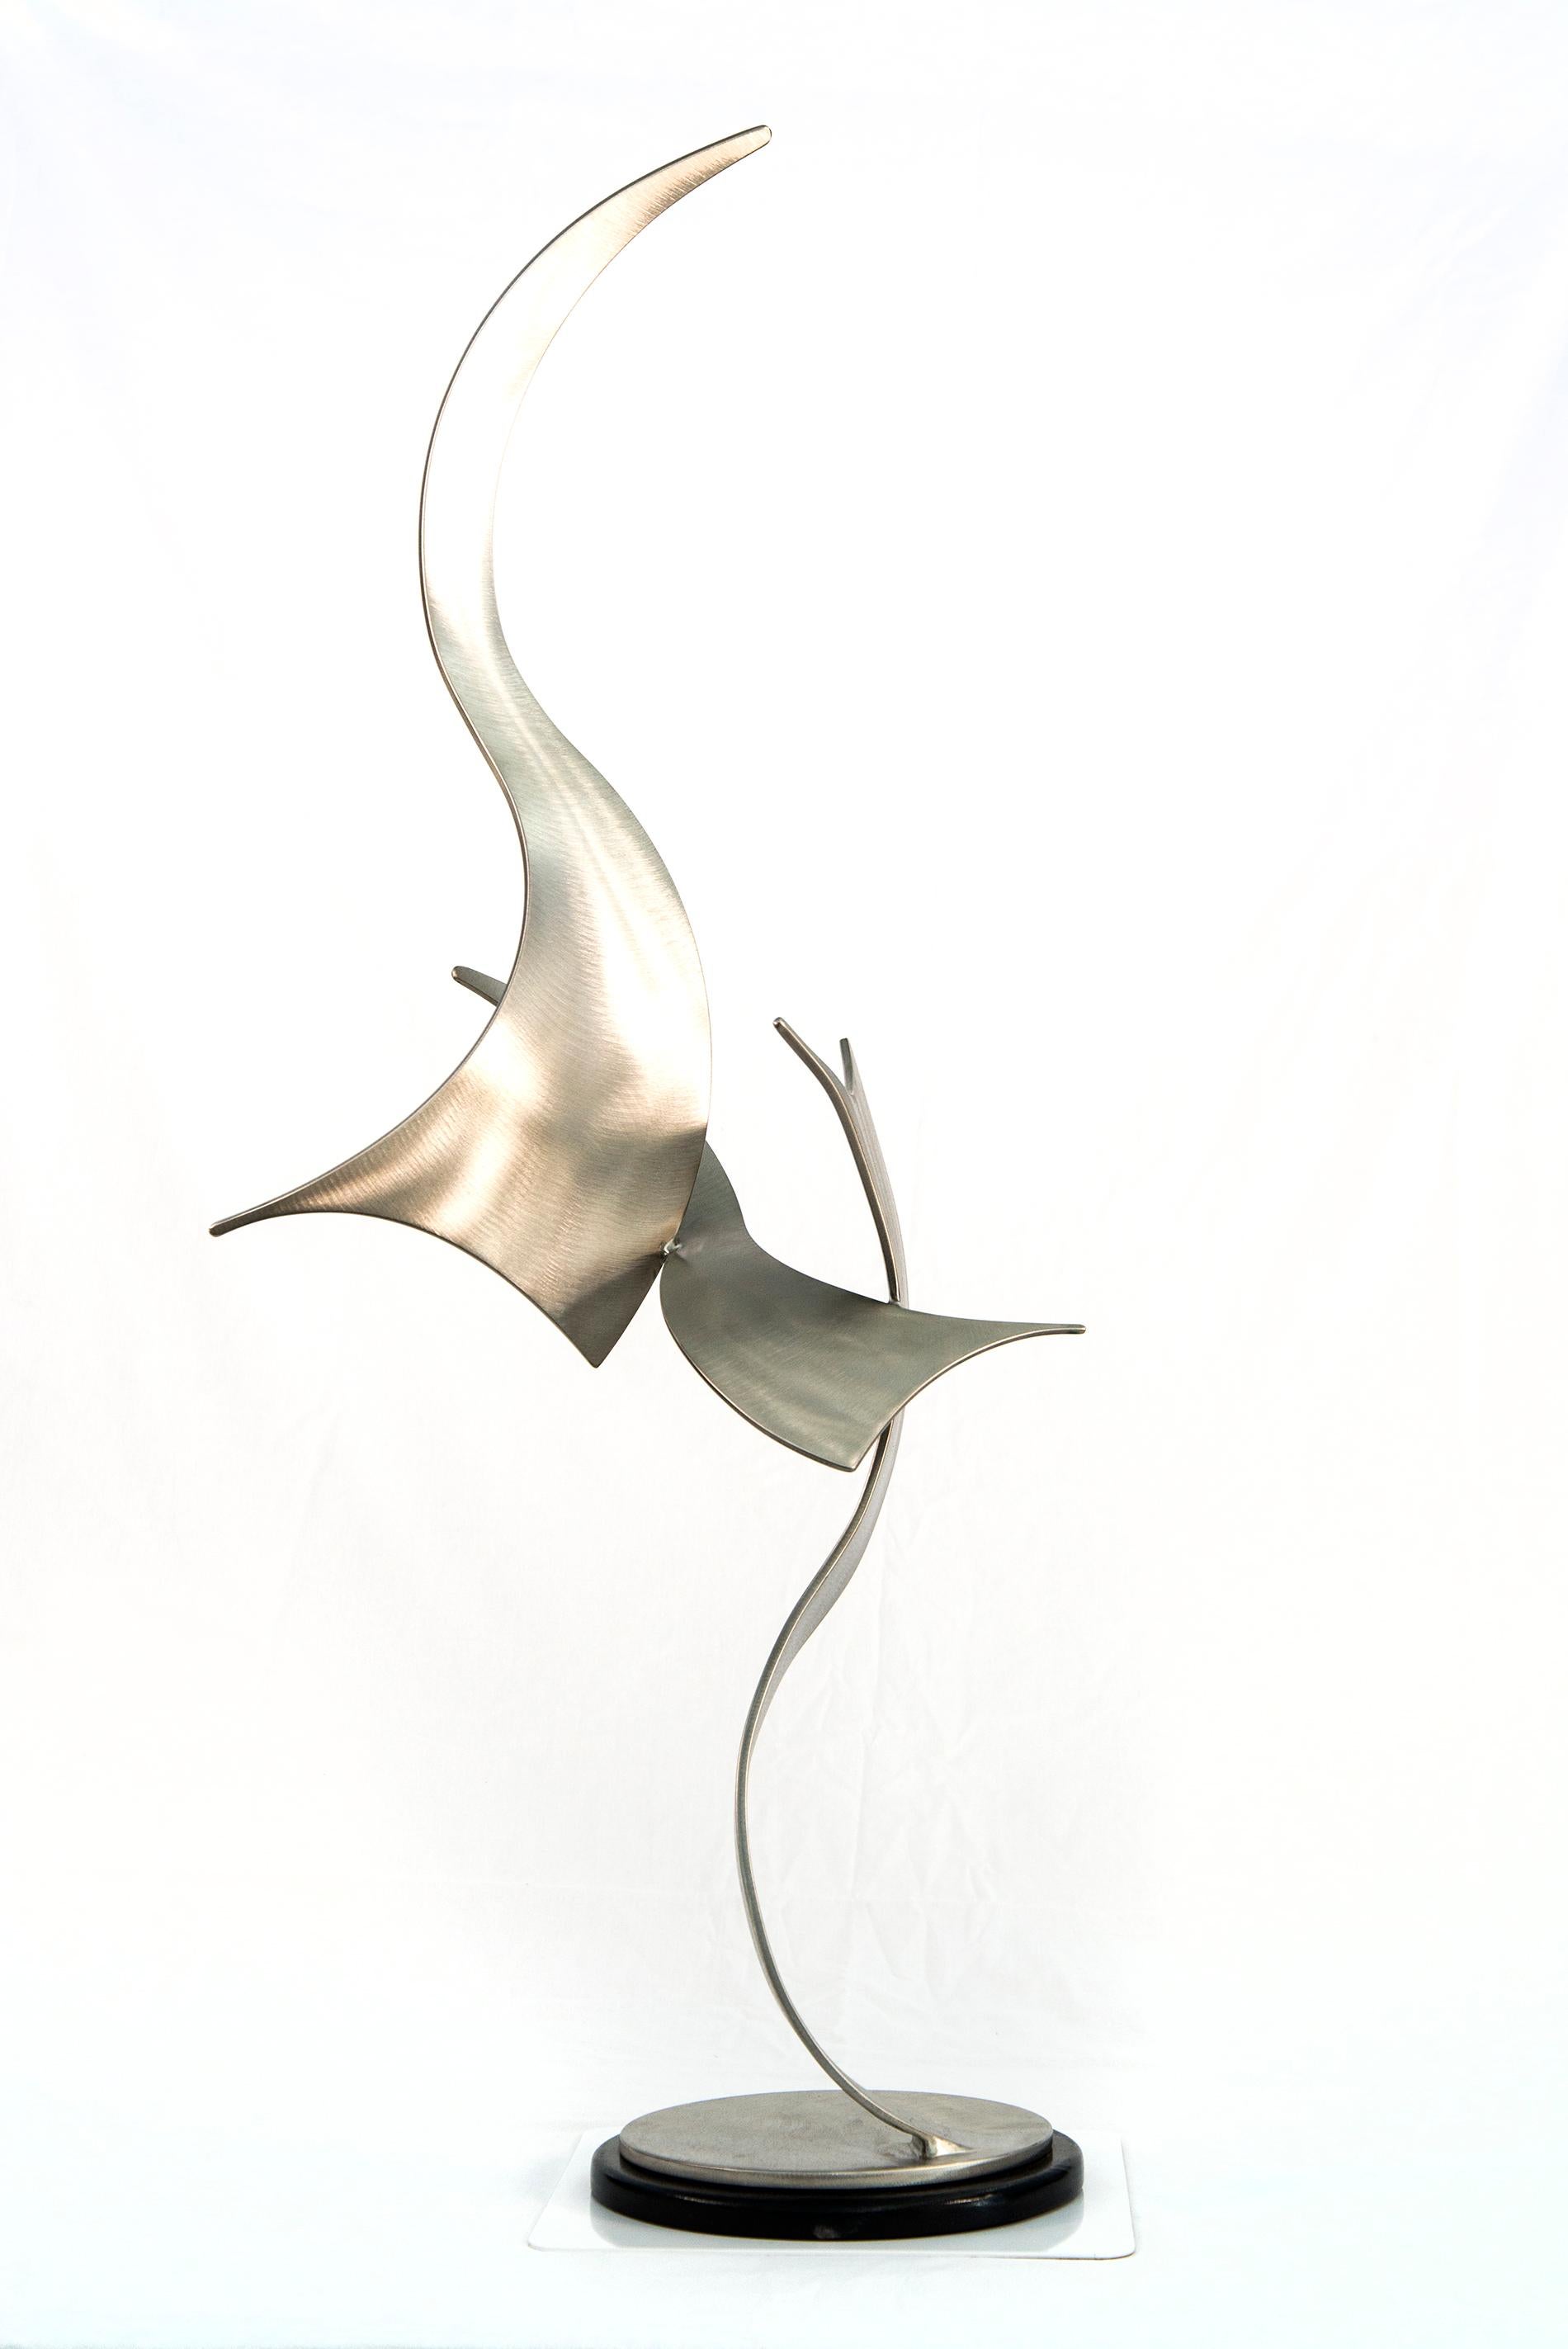 Élégante Mouvement 171 - sculpture contemporaine abstraite en acier inoxydable forgé - Contemporain Sculpture par Kevin Robb